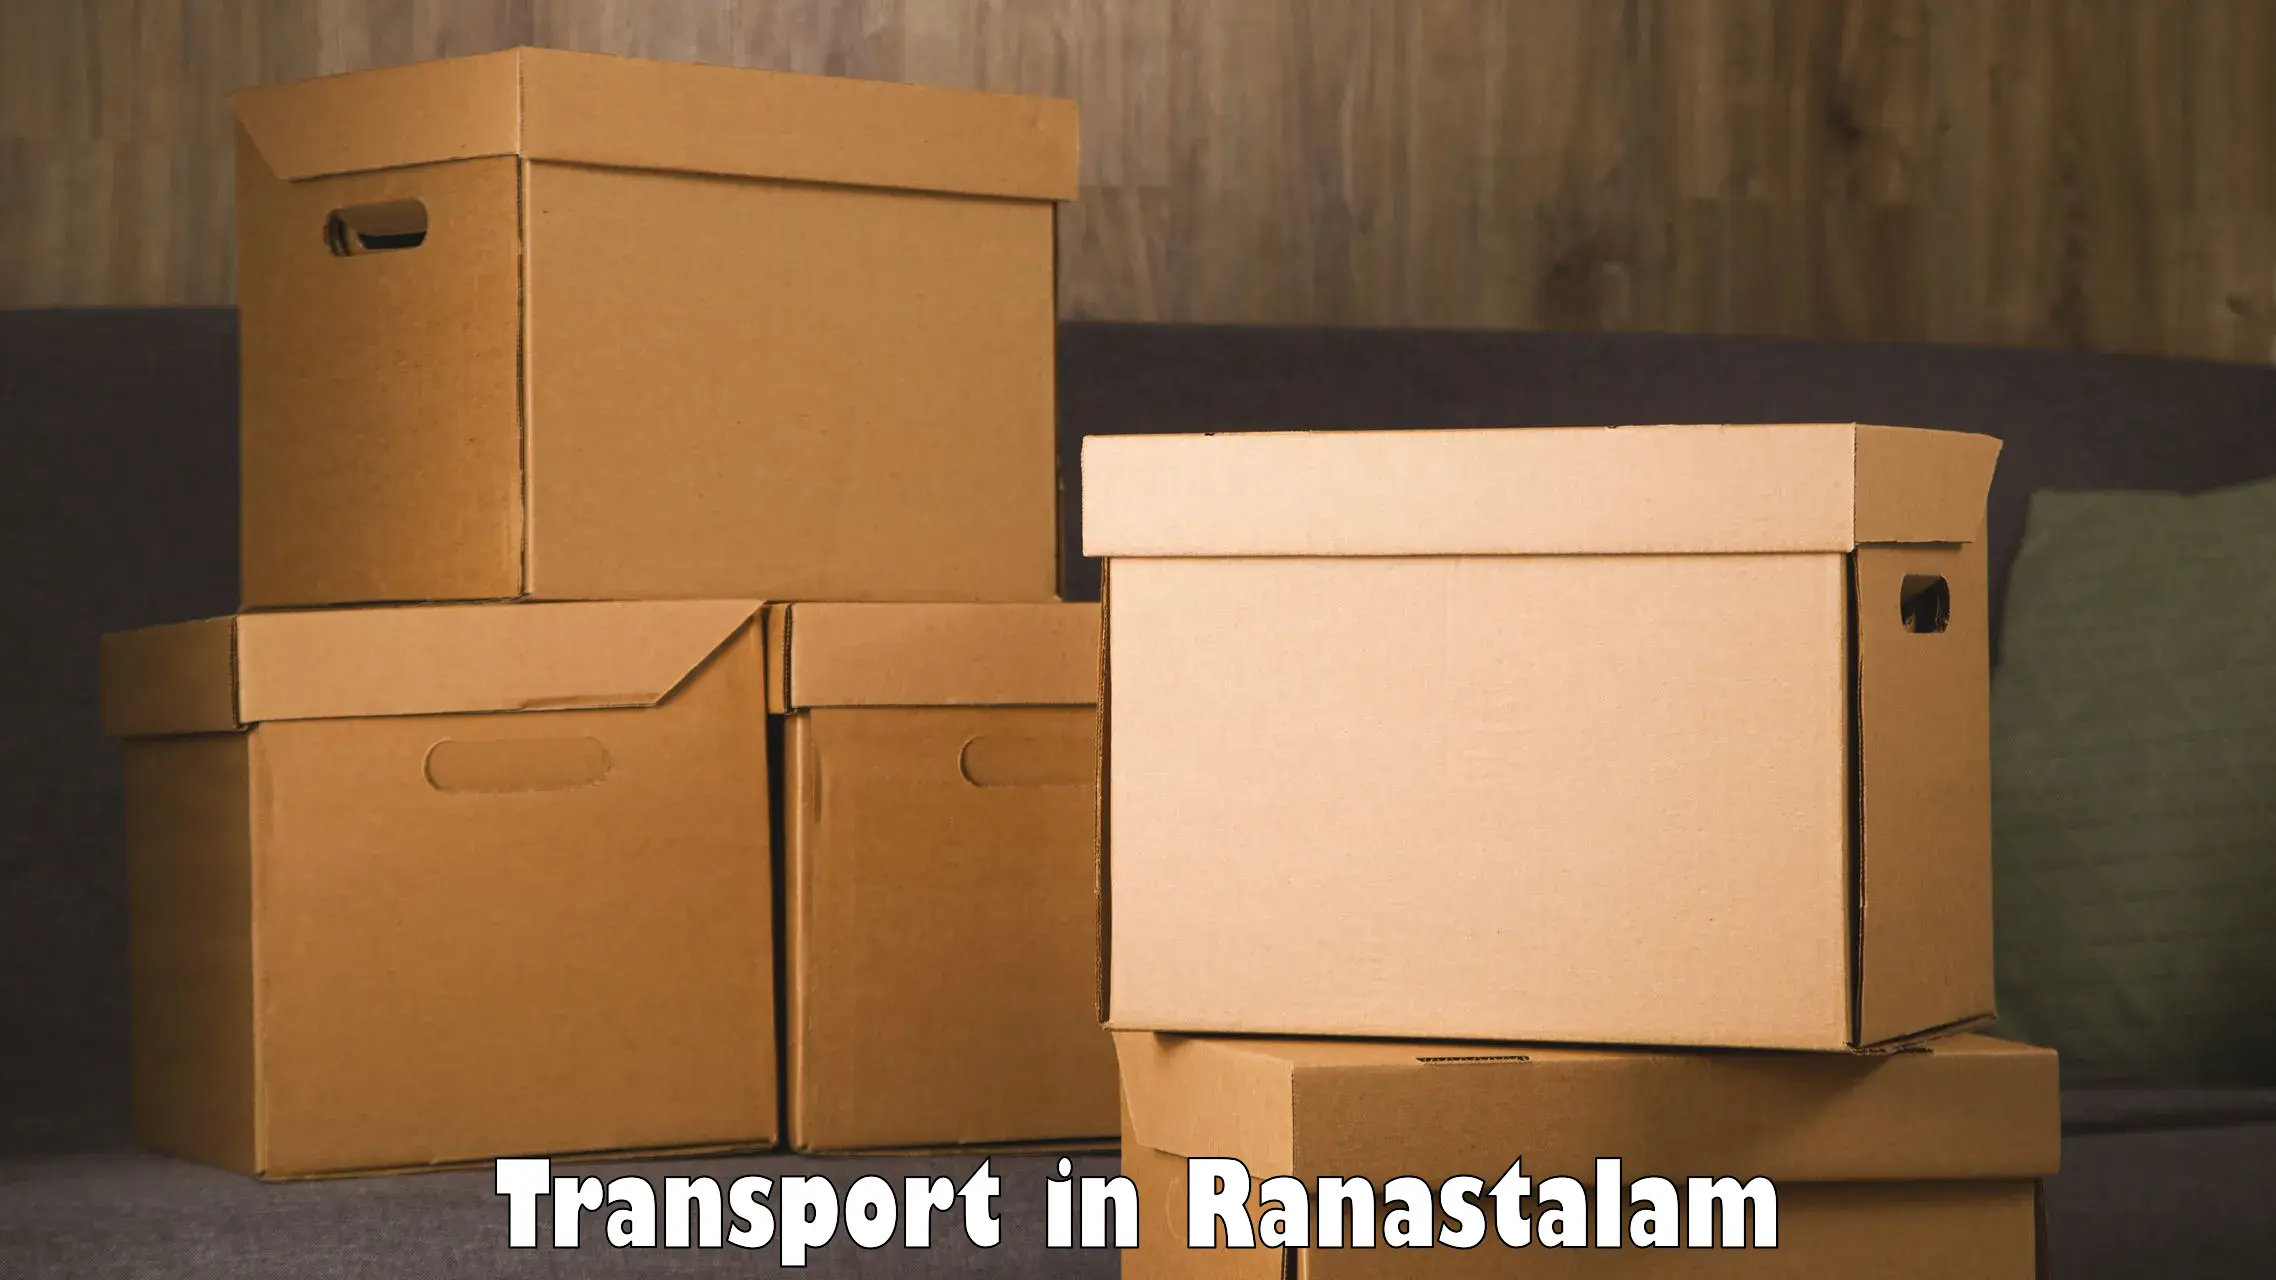 Commercial transport service in Ranastalam